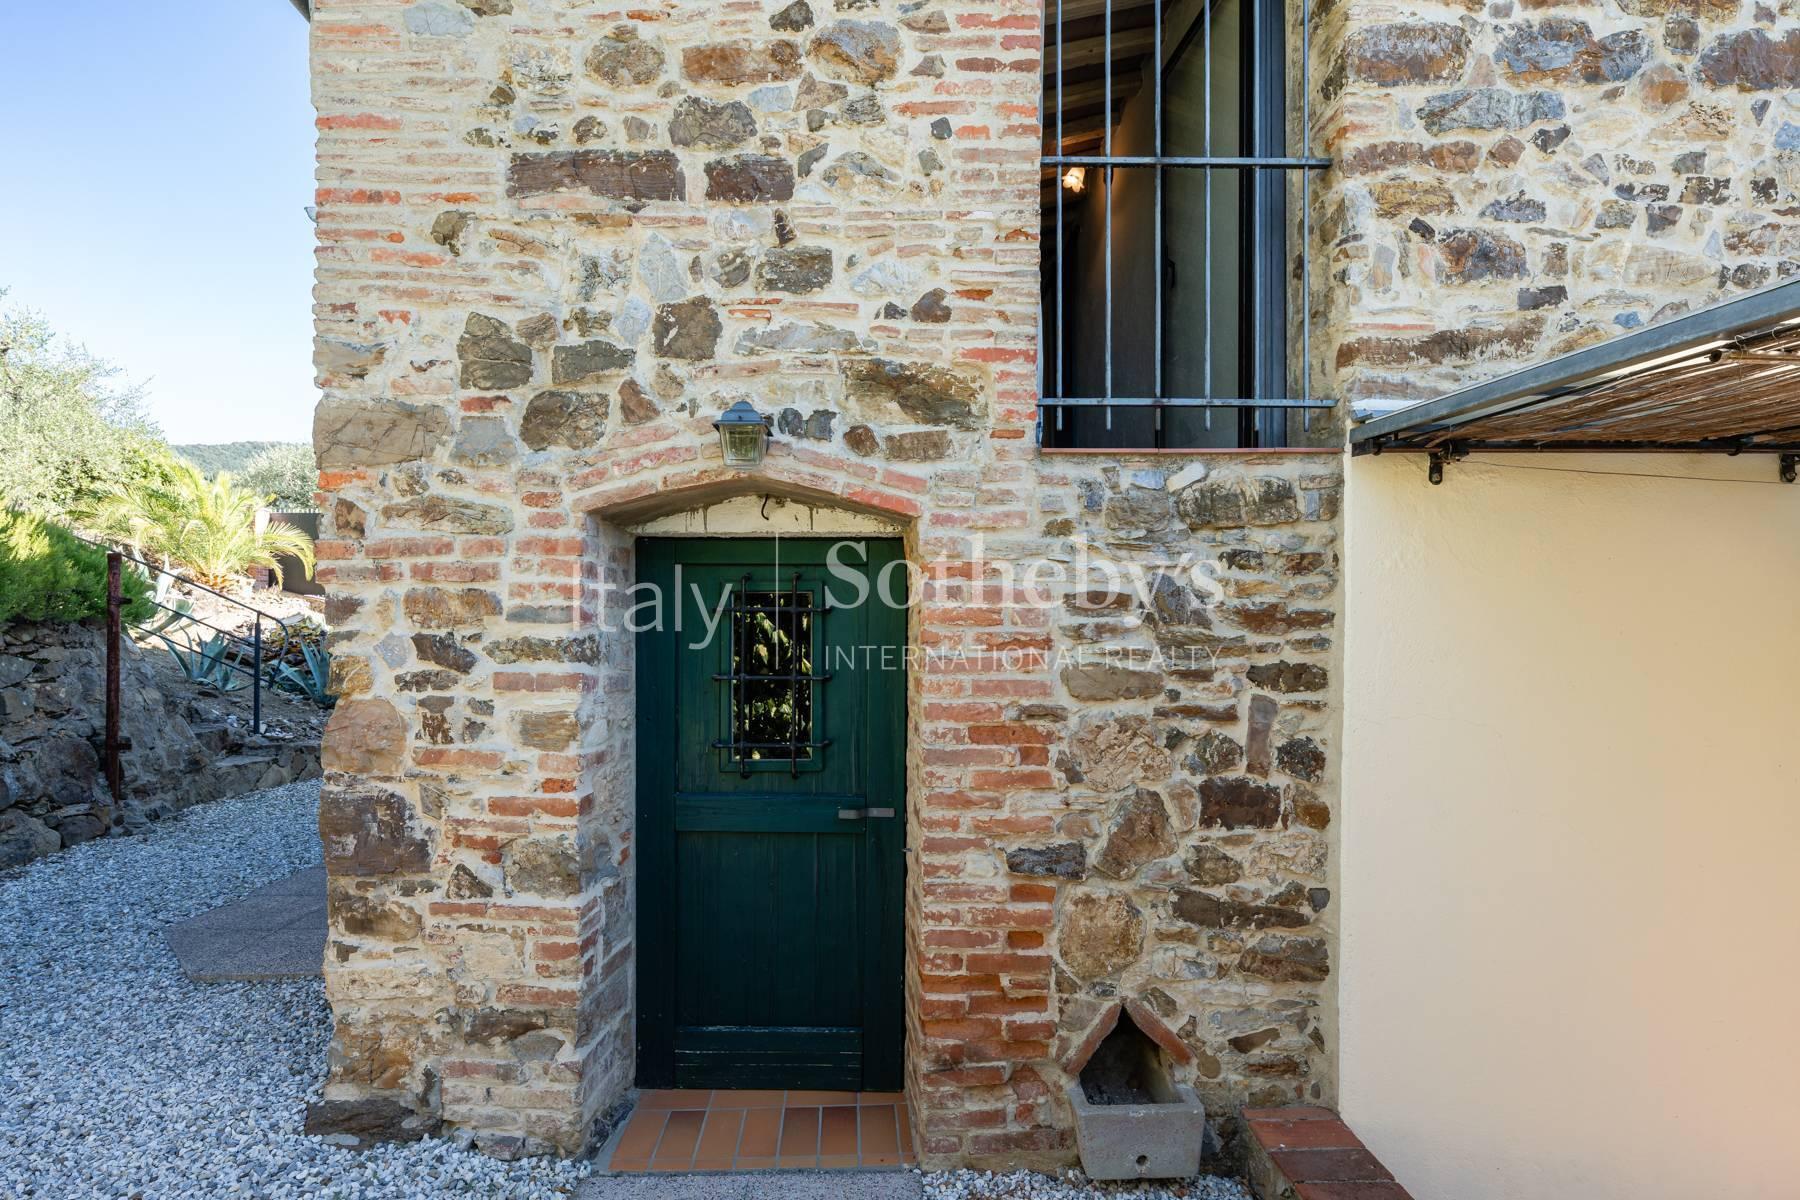 Meraviglioso casale in pietra Toscano tra Lucca e Montecatini Terme - 23